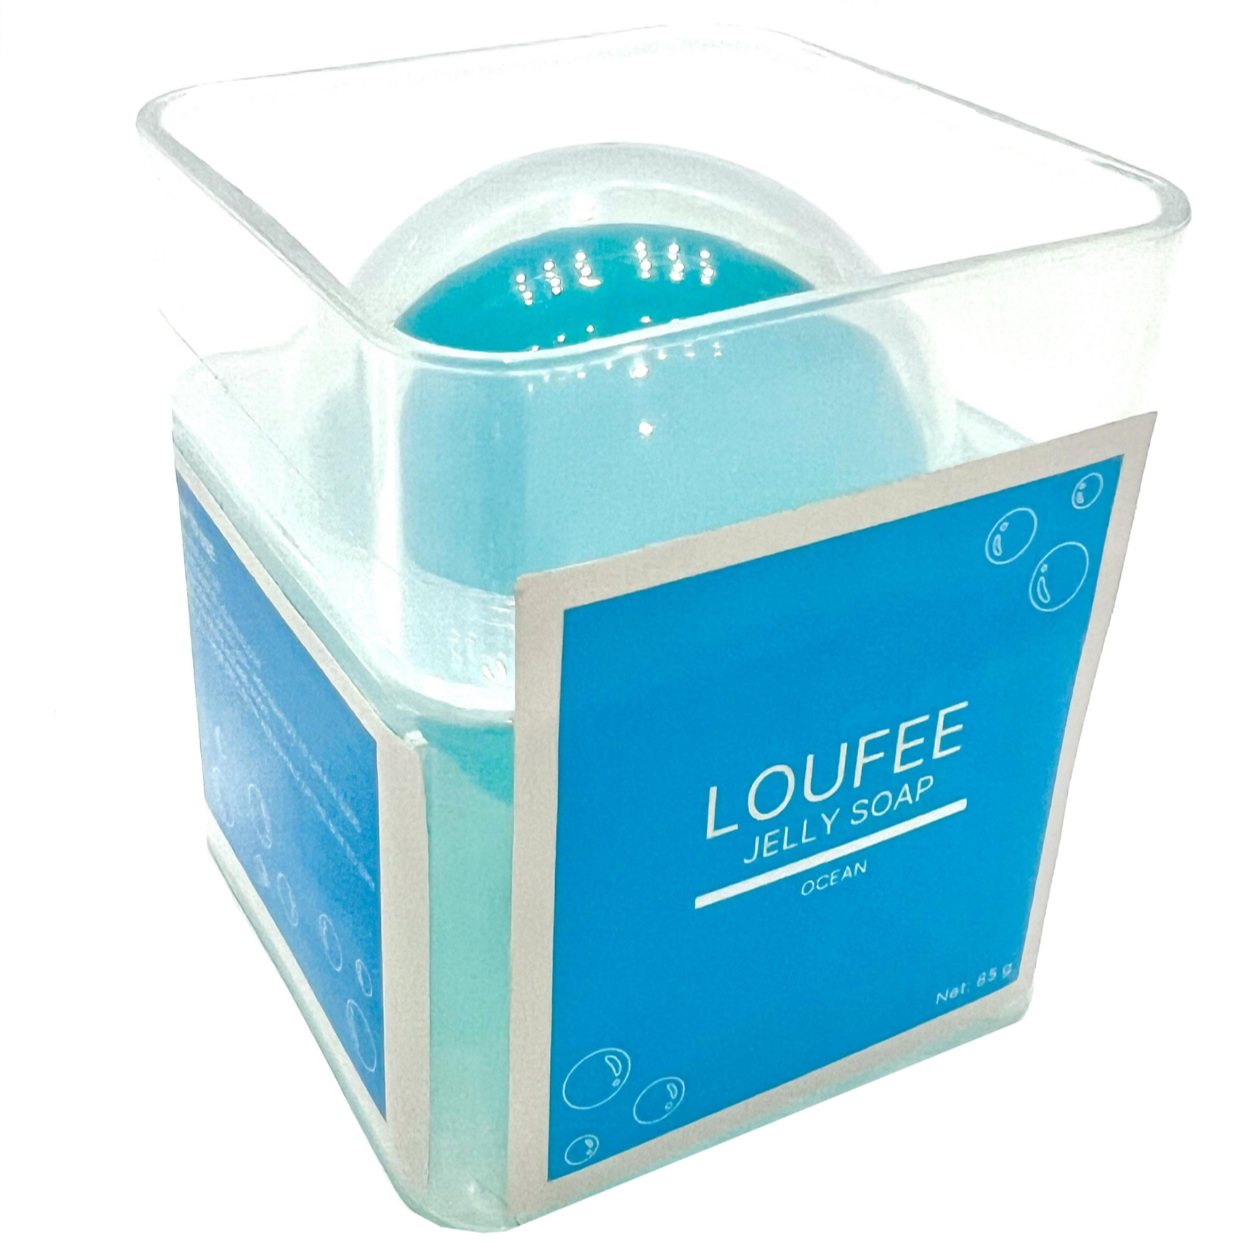 Ocean Jelly Soap – Loufee